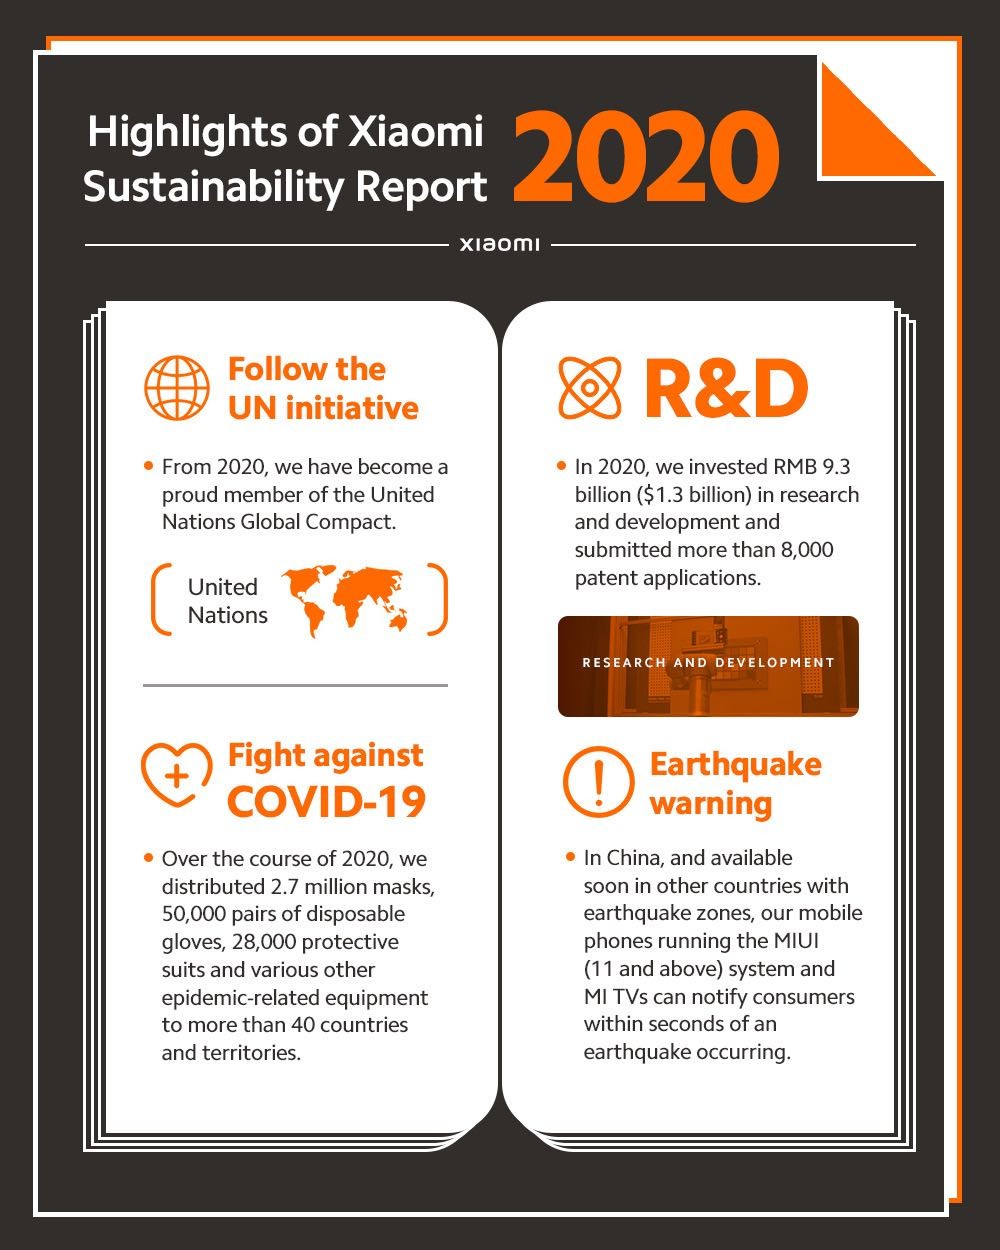  Xiaomi публикует отчет об устойчивом развитии за 2020 год, в котором говорится о сокращении отходов. , борьба с COVID-19 